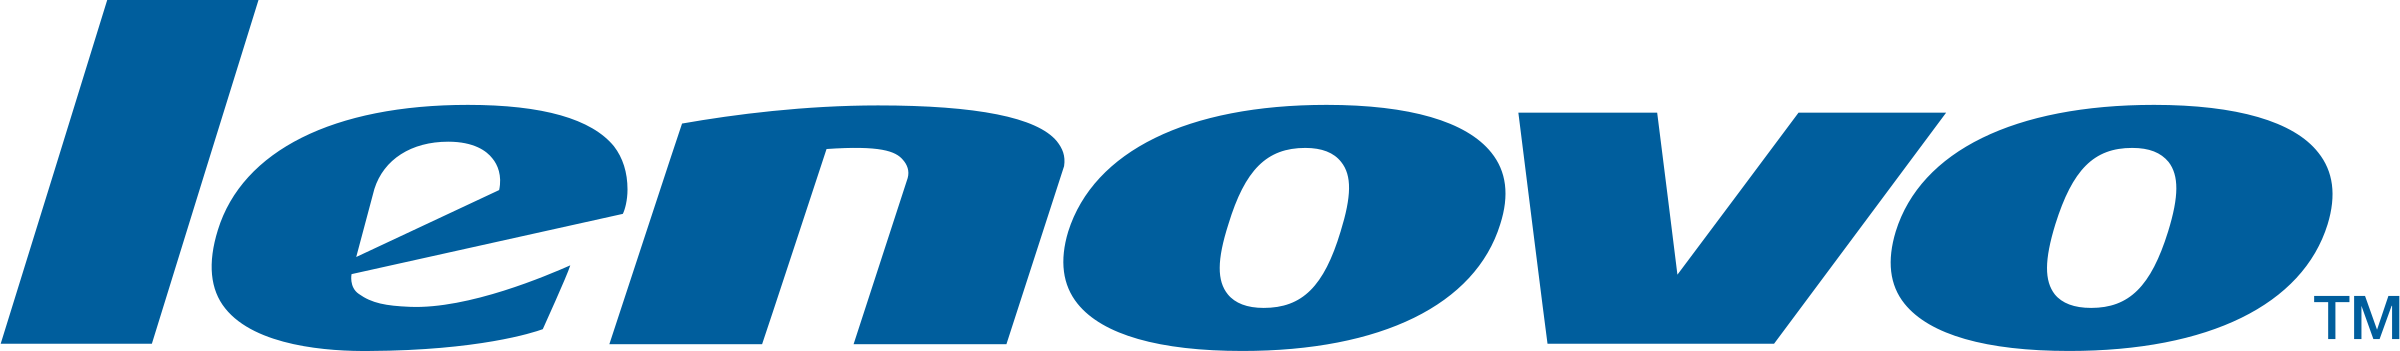 lenovo-1-logo-png-transparent